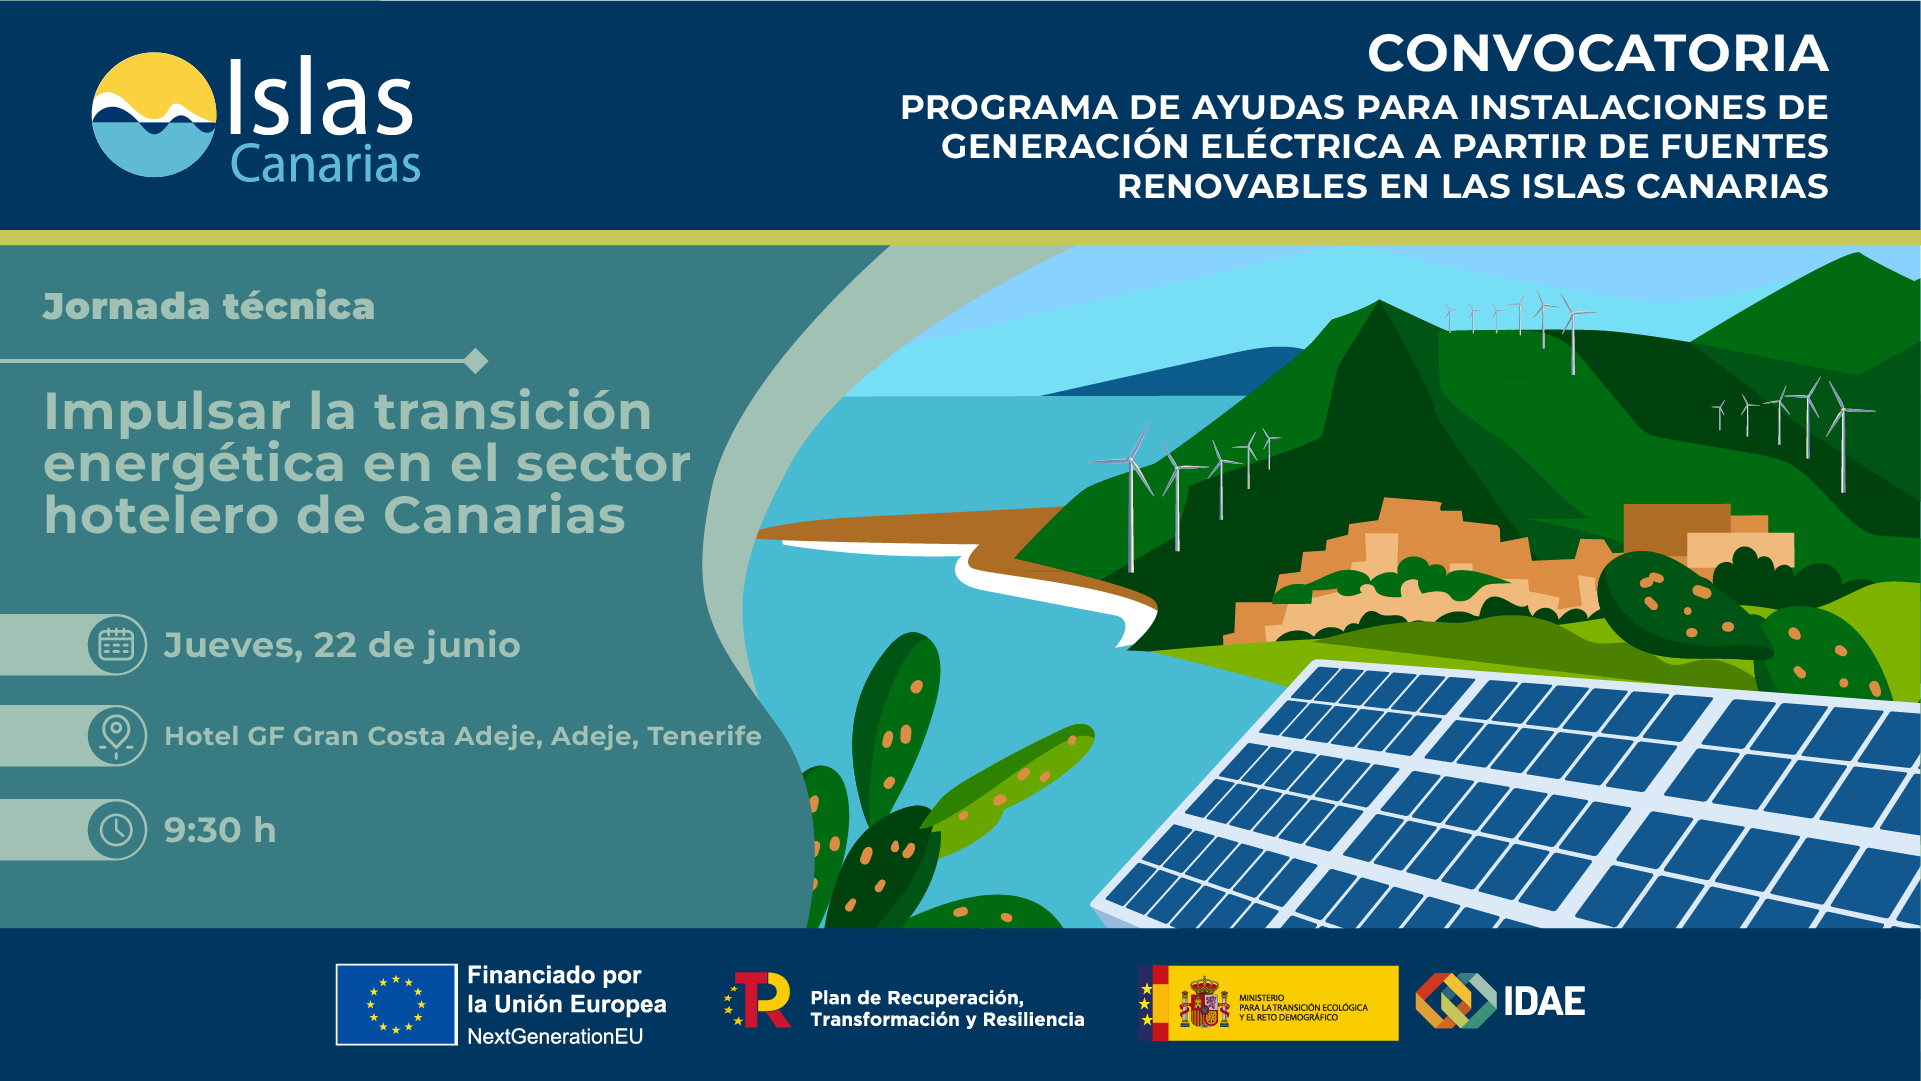 Impulsar la transición energética en el sector hotelero de Canarias